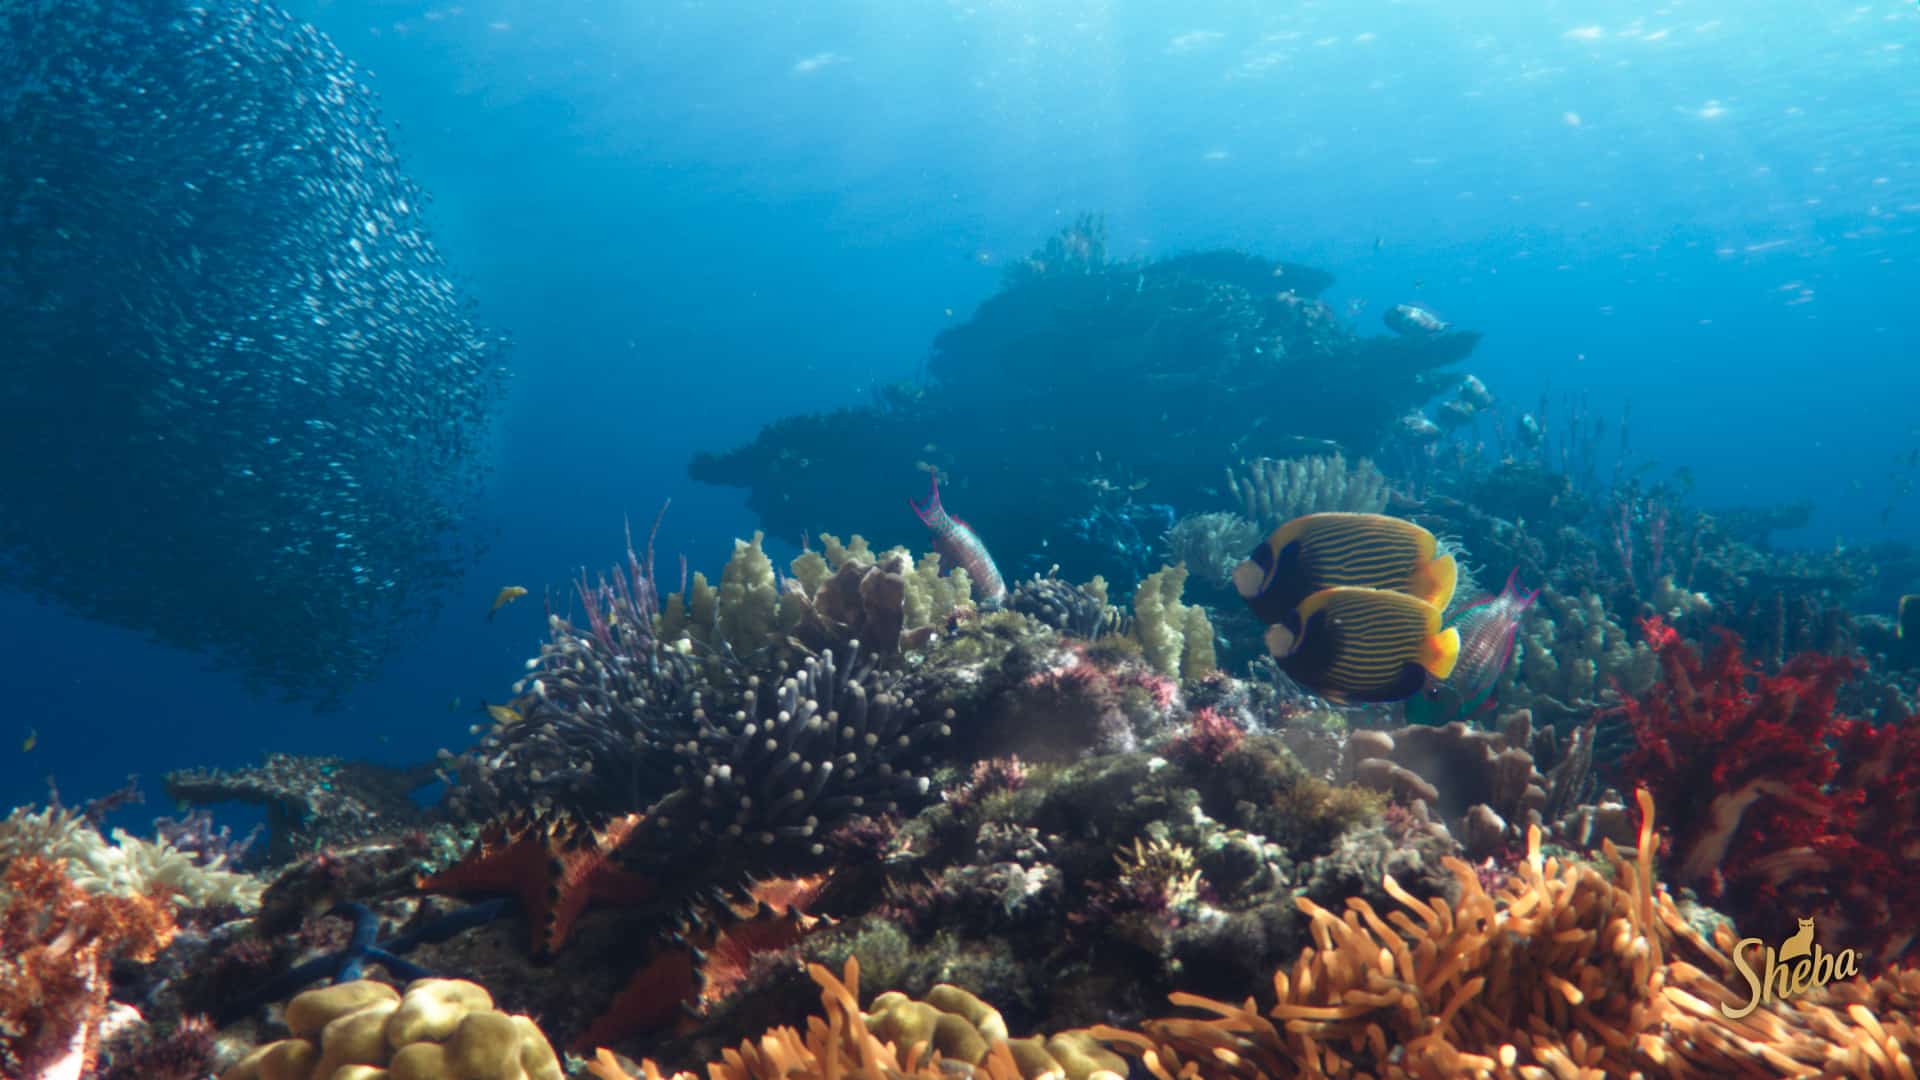 SHEBA®, jenama makanan haiwan Mars, Incorporated lancarkan Program Pemulihan Terumbu Karang Terbesar Di Dunia: Hope Reef